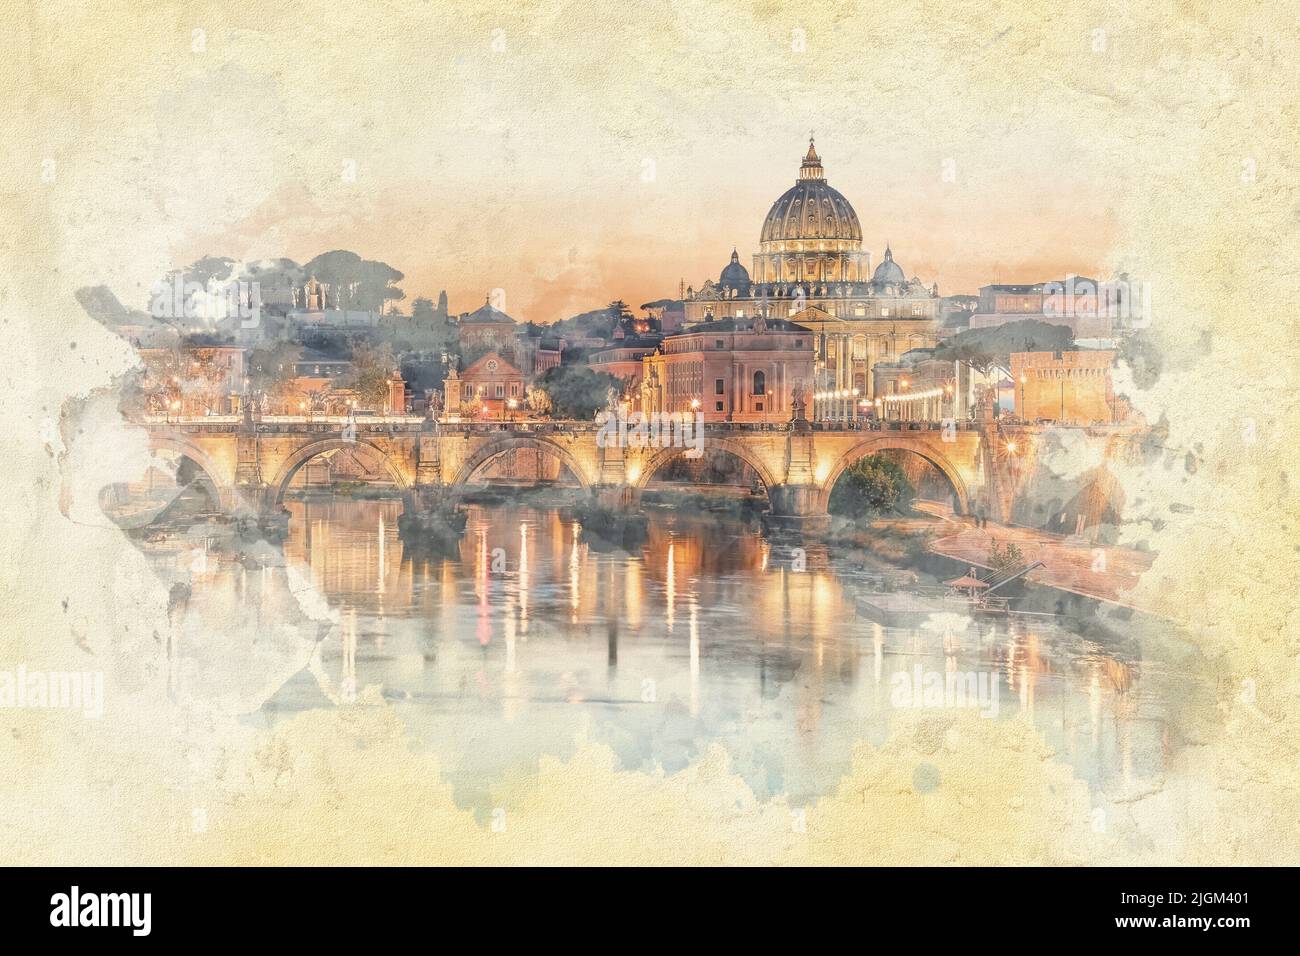 La ciudad de Roma al atardecer - ilustración del efecto de acuarela Foto de stock